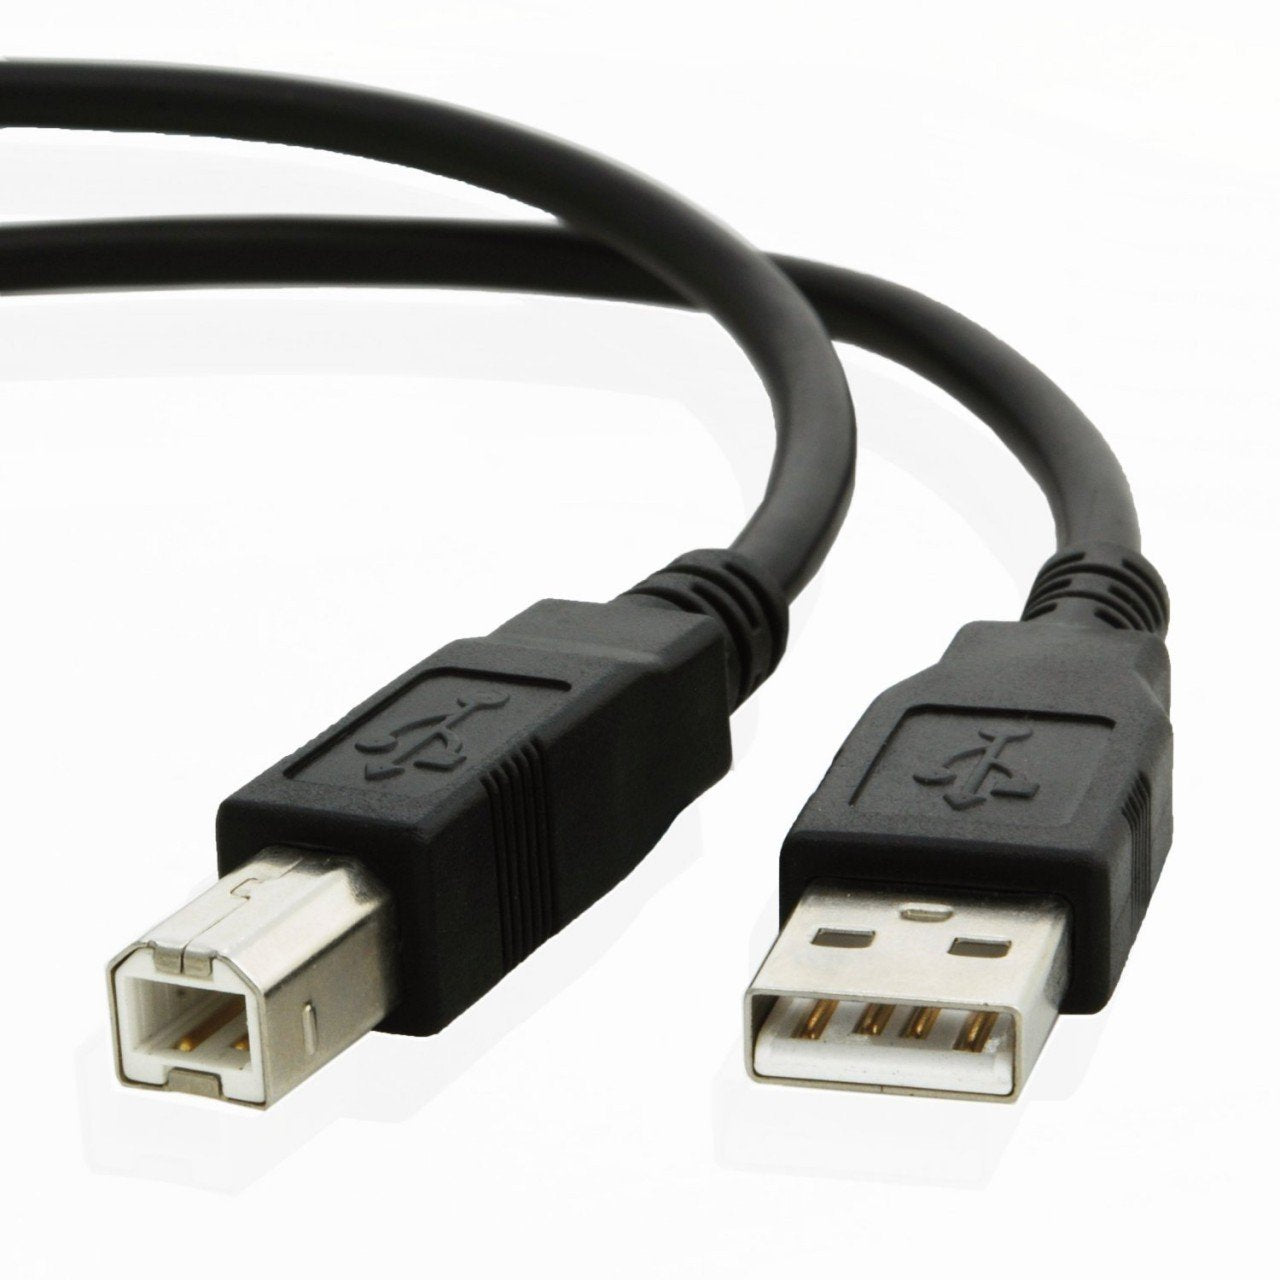 USB cable for Samson CO3U